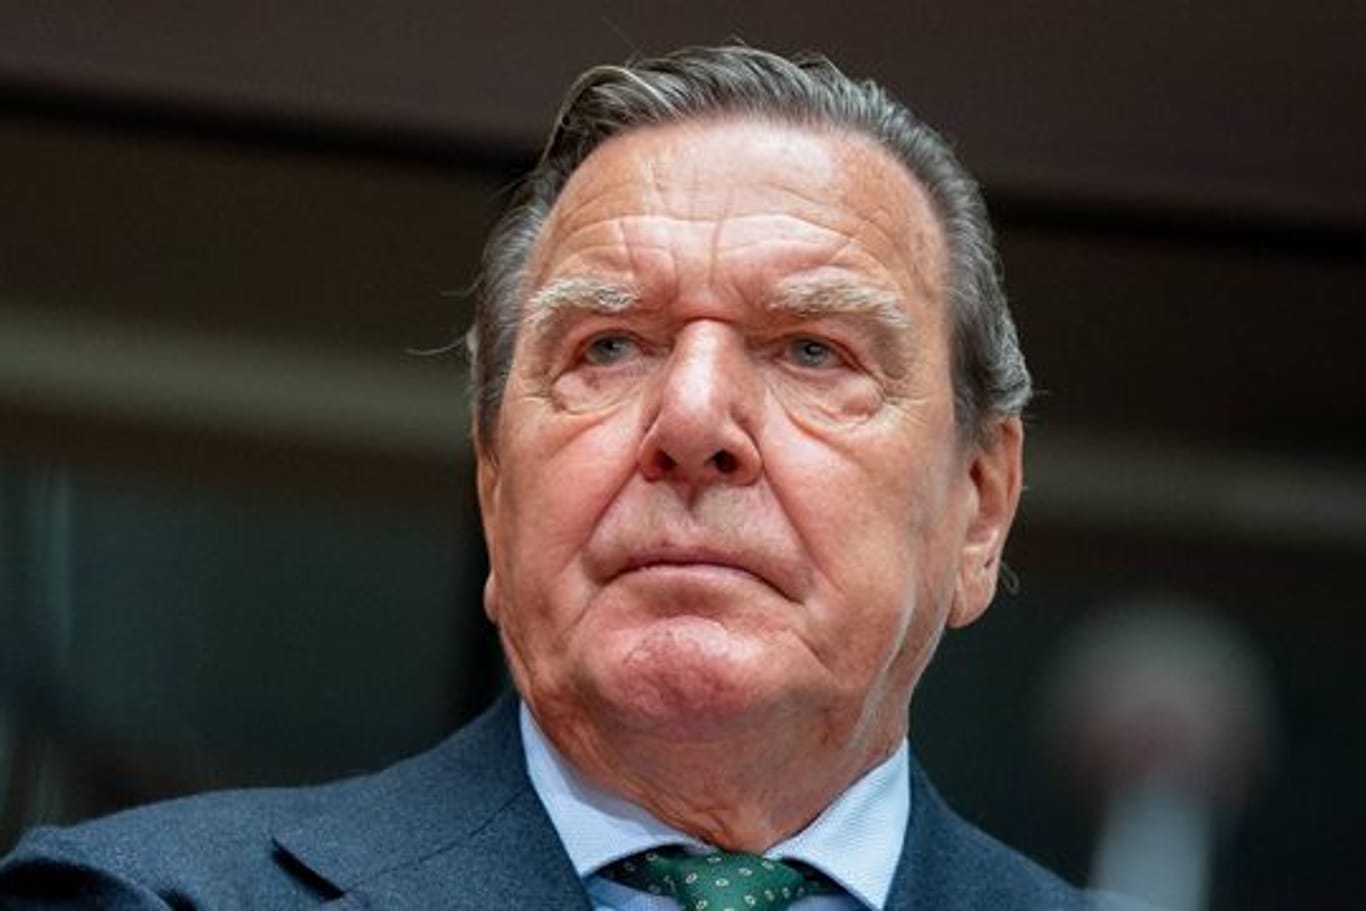 "Ich habe ihn mal sehr geschätzt, das ist aber schon lange her", sagt Karl Lauterbach über Ex-Kanzler Gerhard Schröder.